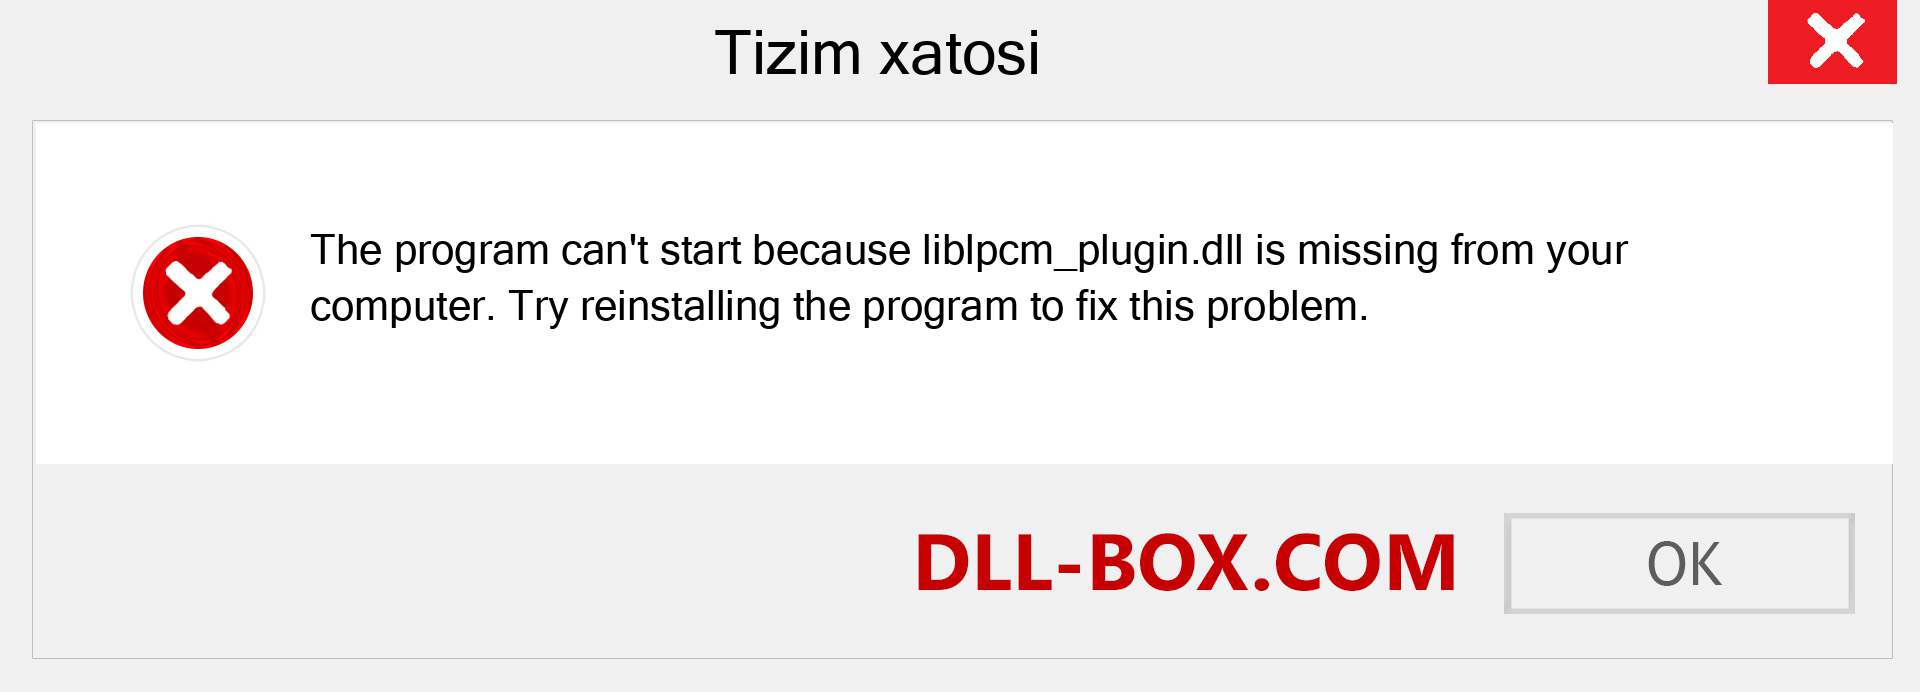 liblpcm_plugin.dll fayli yo'qolganmi?. Windows 7, 8, 10 uchun yuklab olish - Windowsda liblpcm_plugin dll etishmayotgan xatoni tuzating, rasmlar, rasmlar